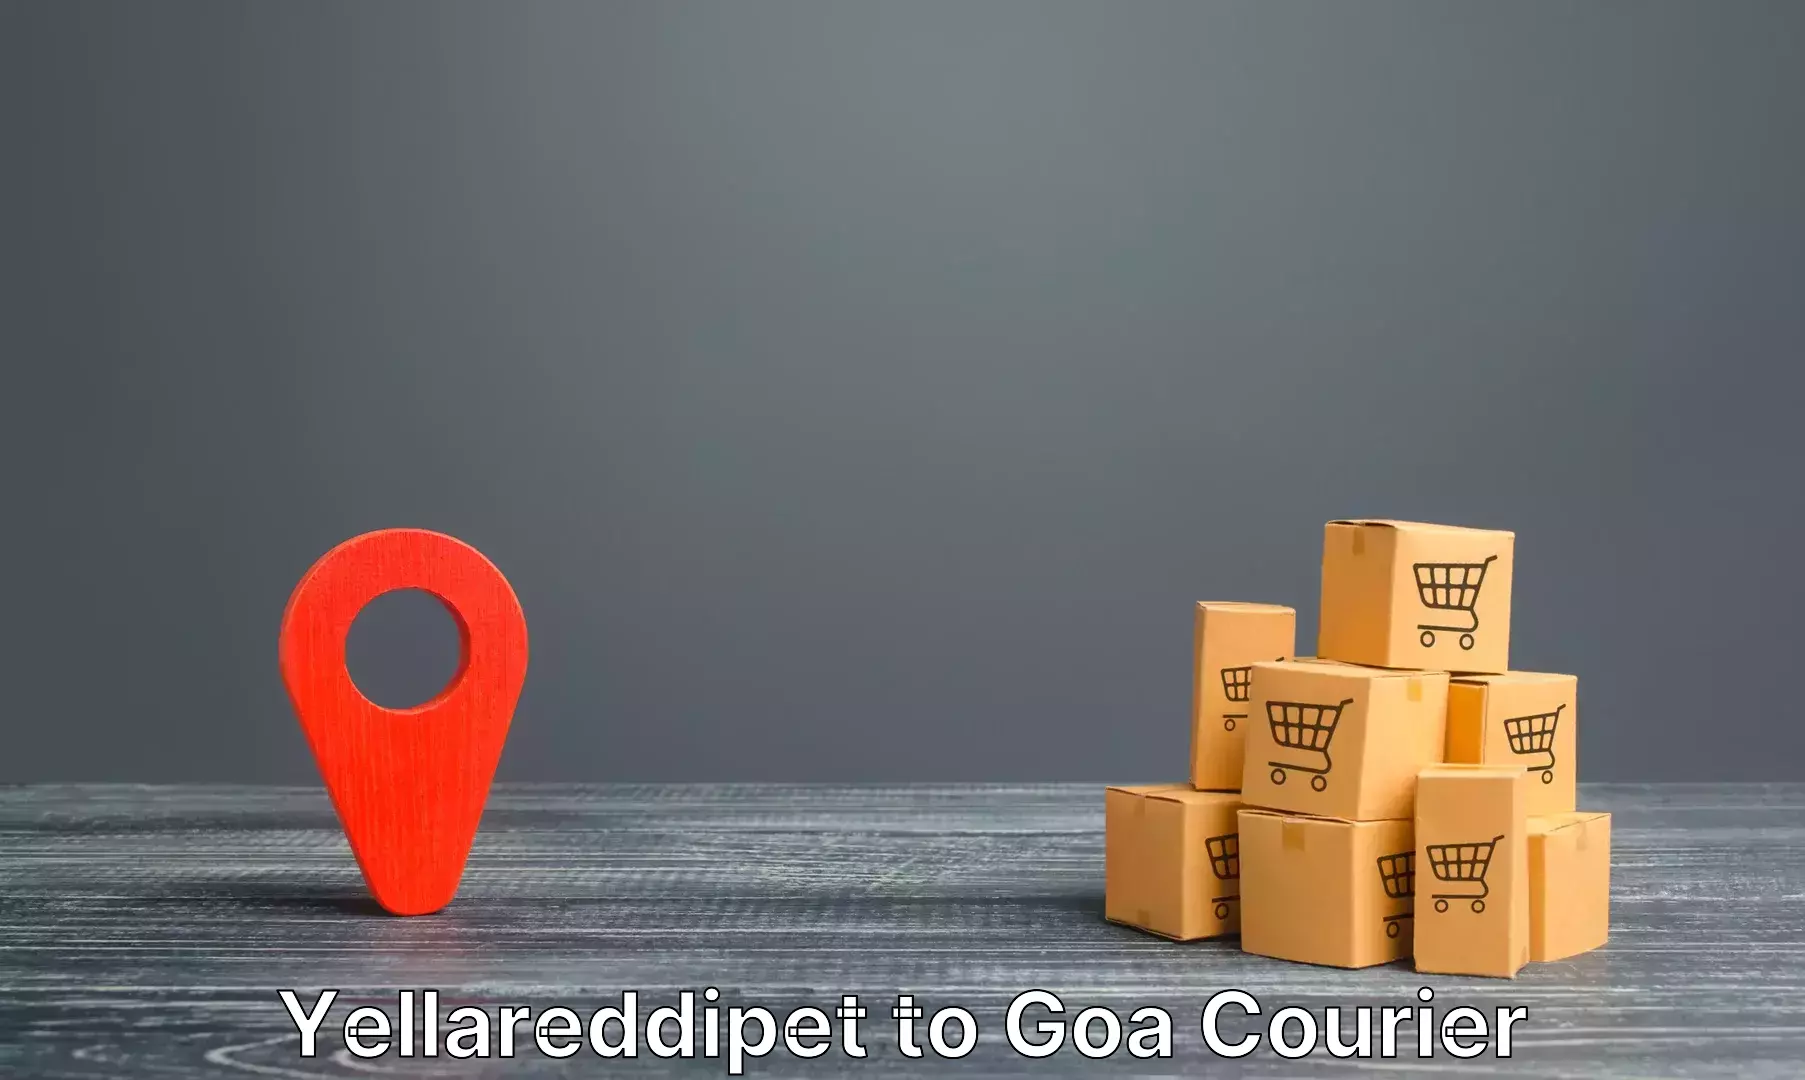 Luggage forwarding service Yellareddipet to South Goa